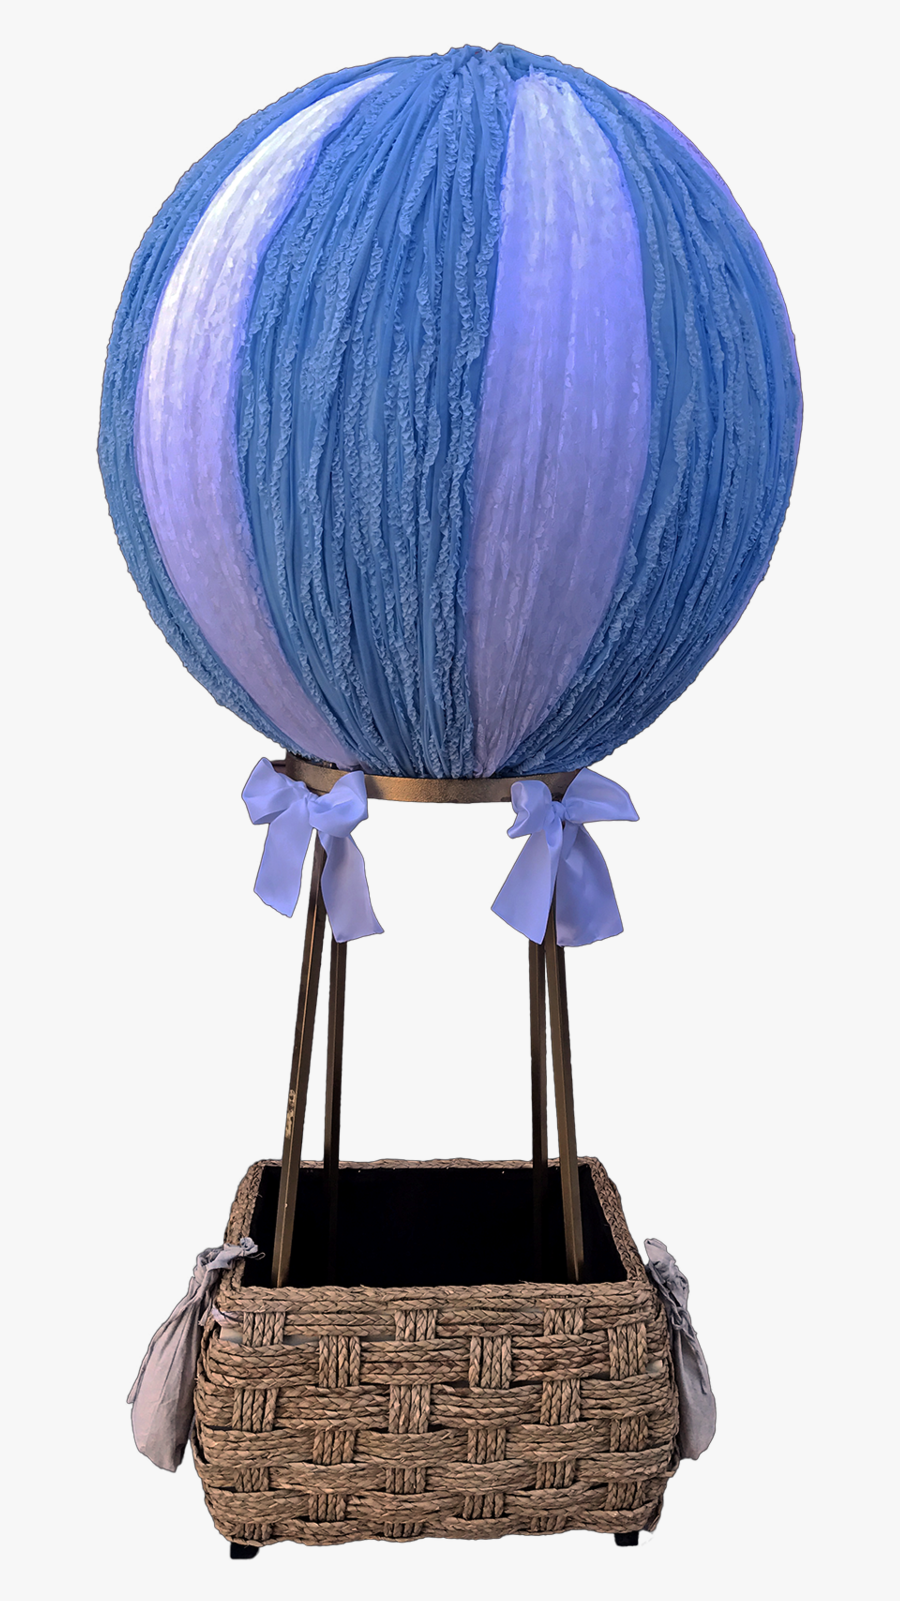 Blue & White Hot Air Balloon - Blue And White Hot Air Balloon, Transparent Clipart